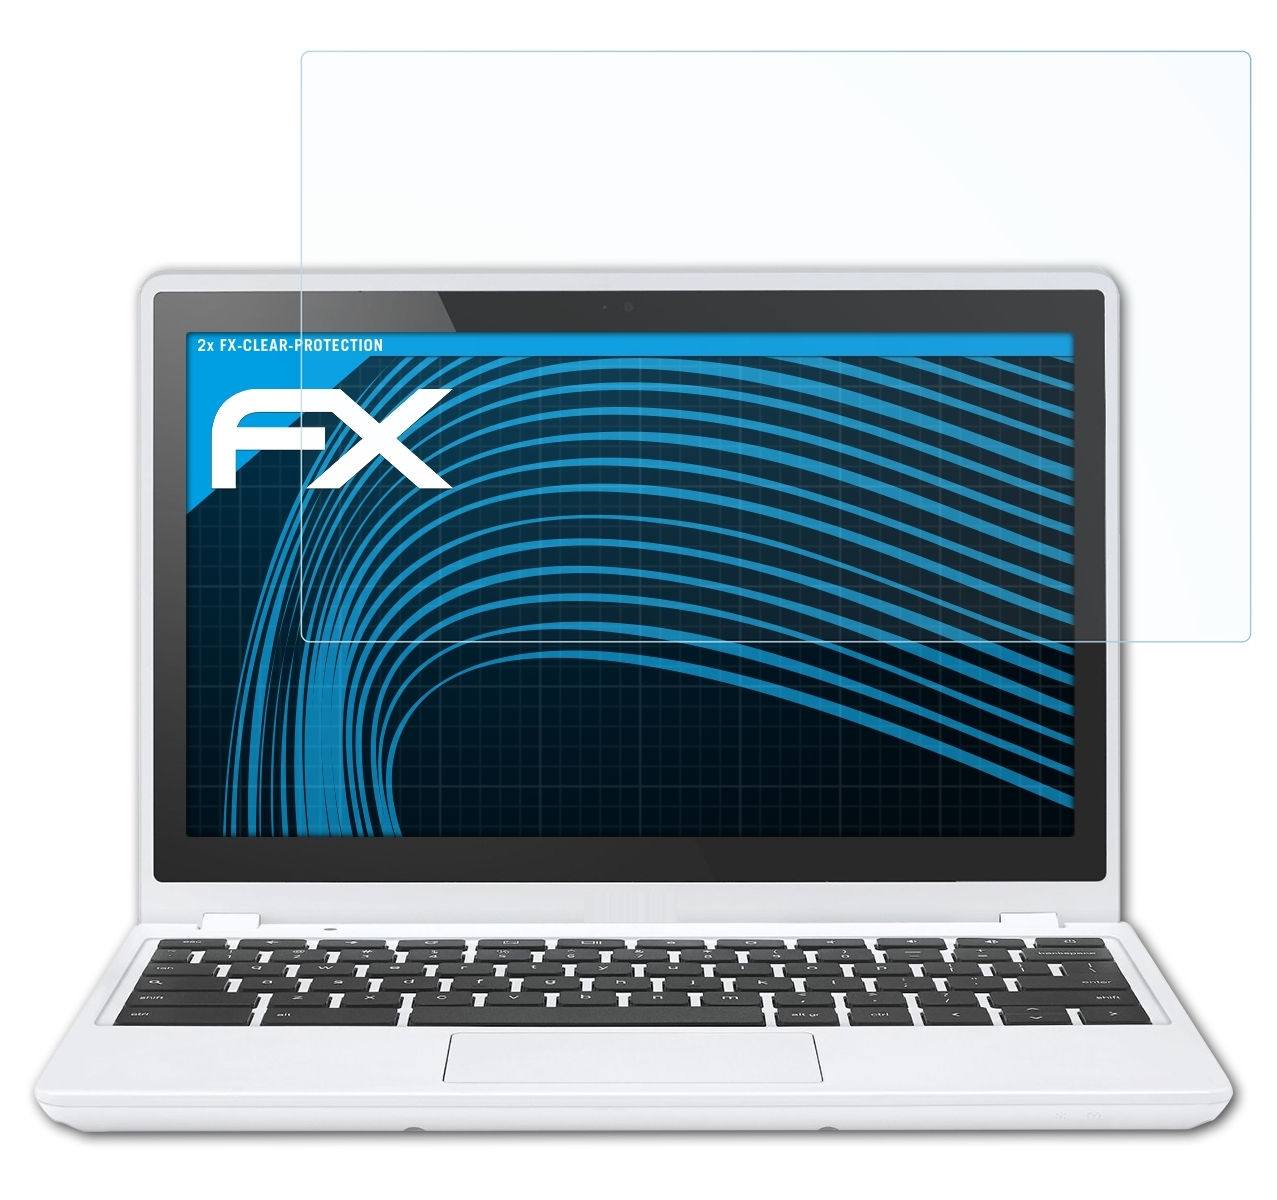 ATFOLIX 2x FX-Clear (Acer)) Displayschutz(für (11.6 Inch) C720 Google Chromebook